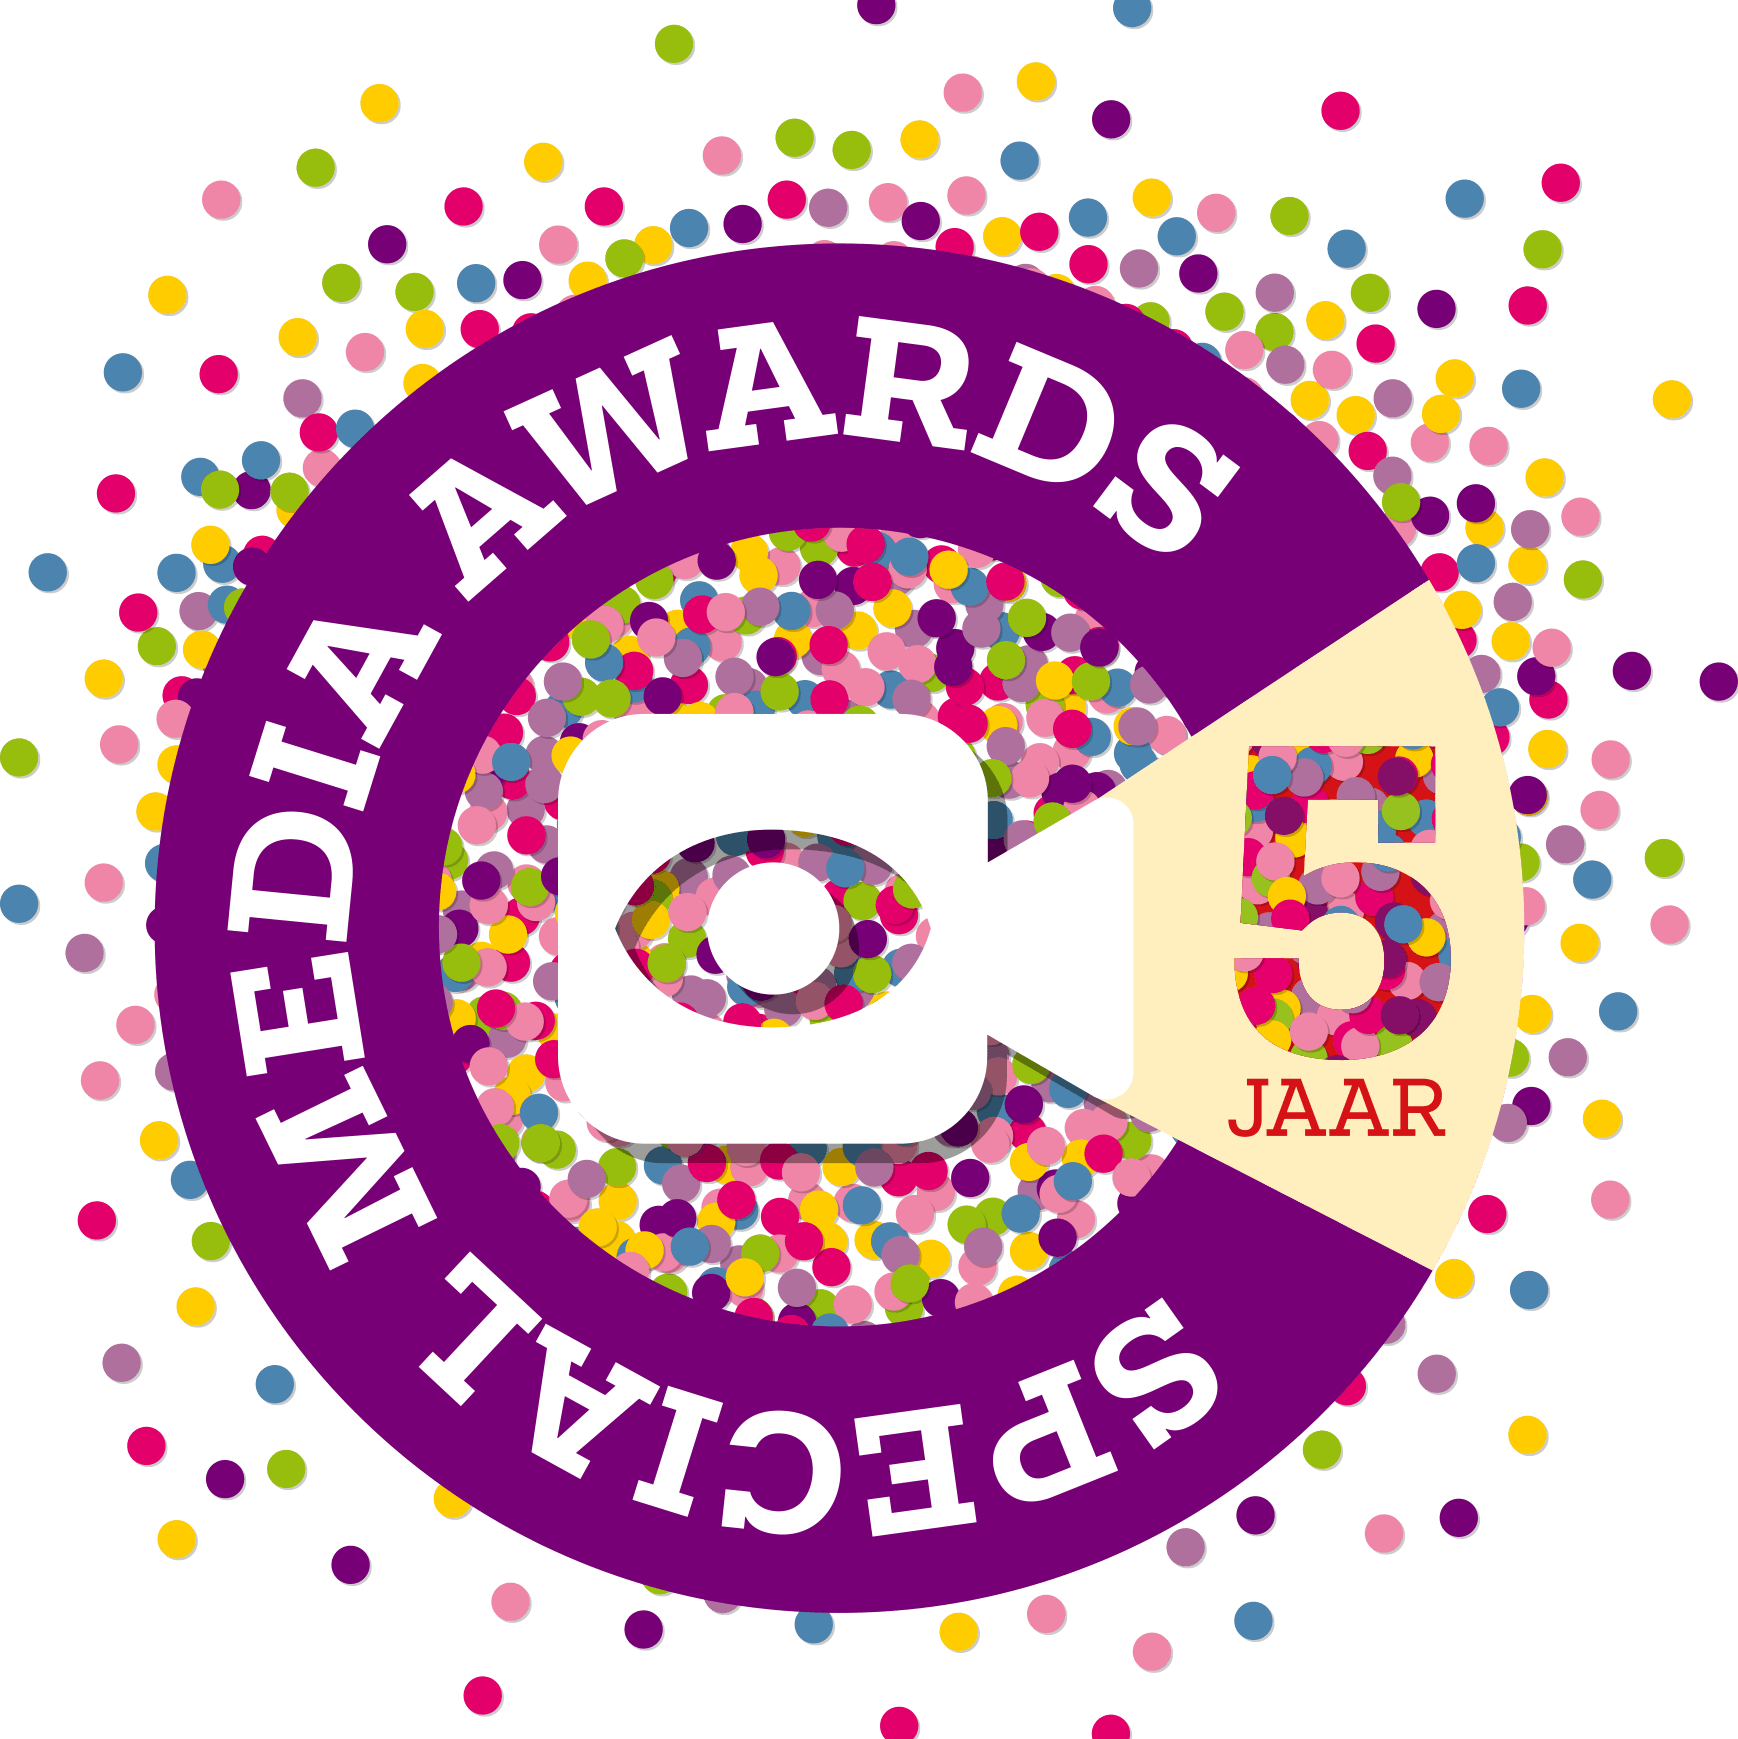 Special Media Awards 2023 - Genomineerden bekend!